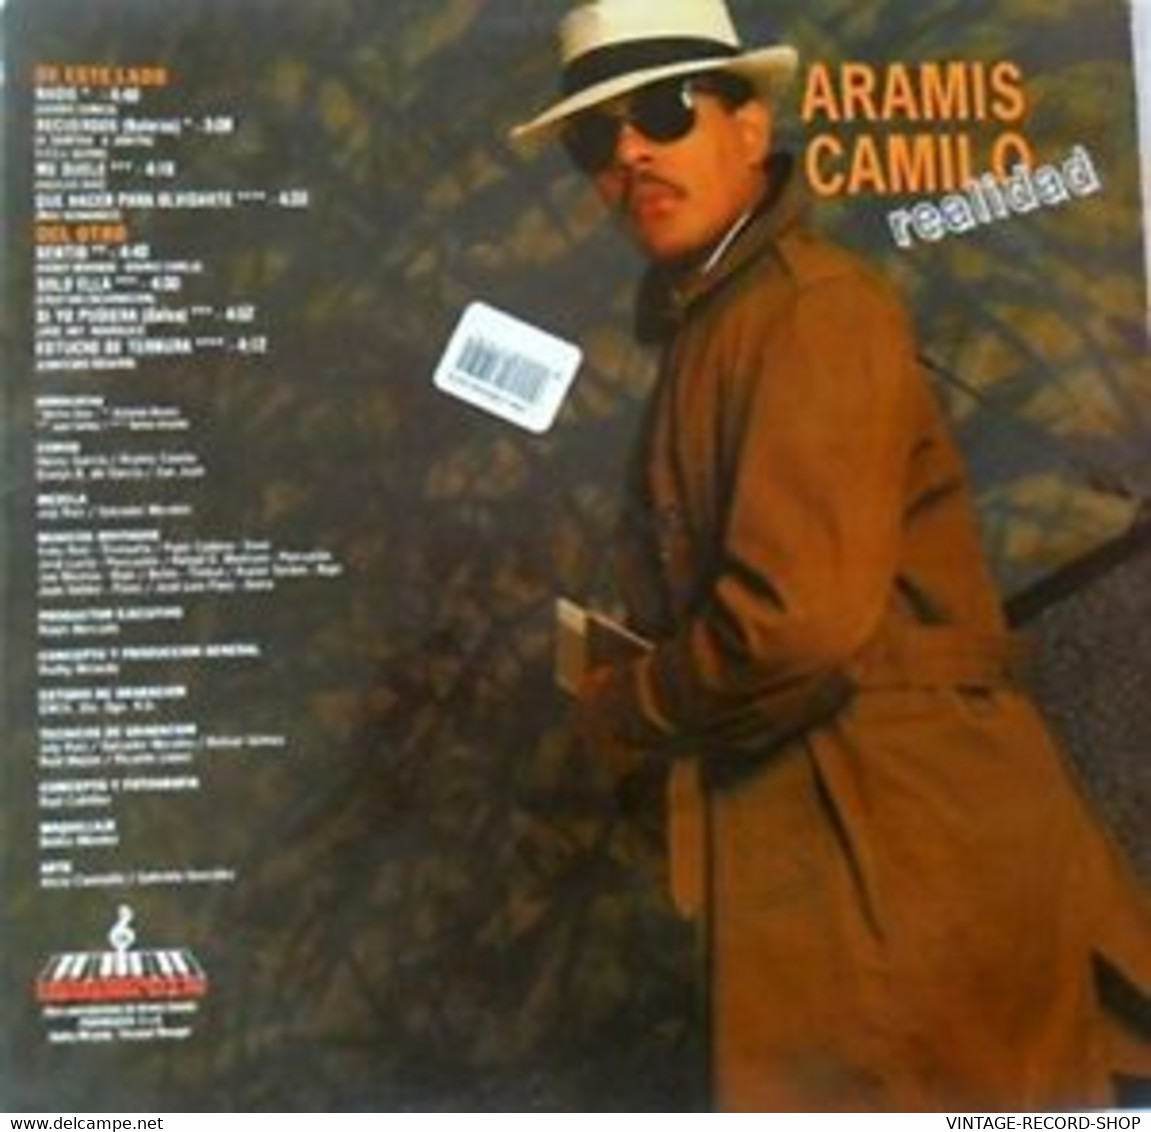 ARAMIS CAMILO*REALIDAD* RMM-SONOLUX LP 1992 SALSA BOLERO MERENGUE - Other - Spanish Music